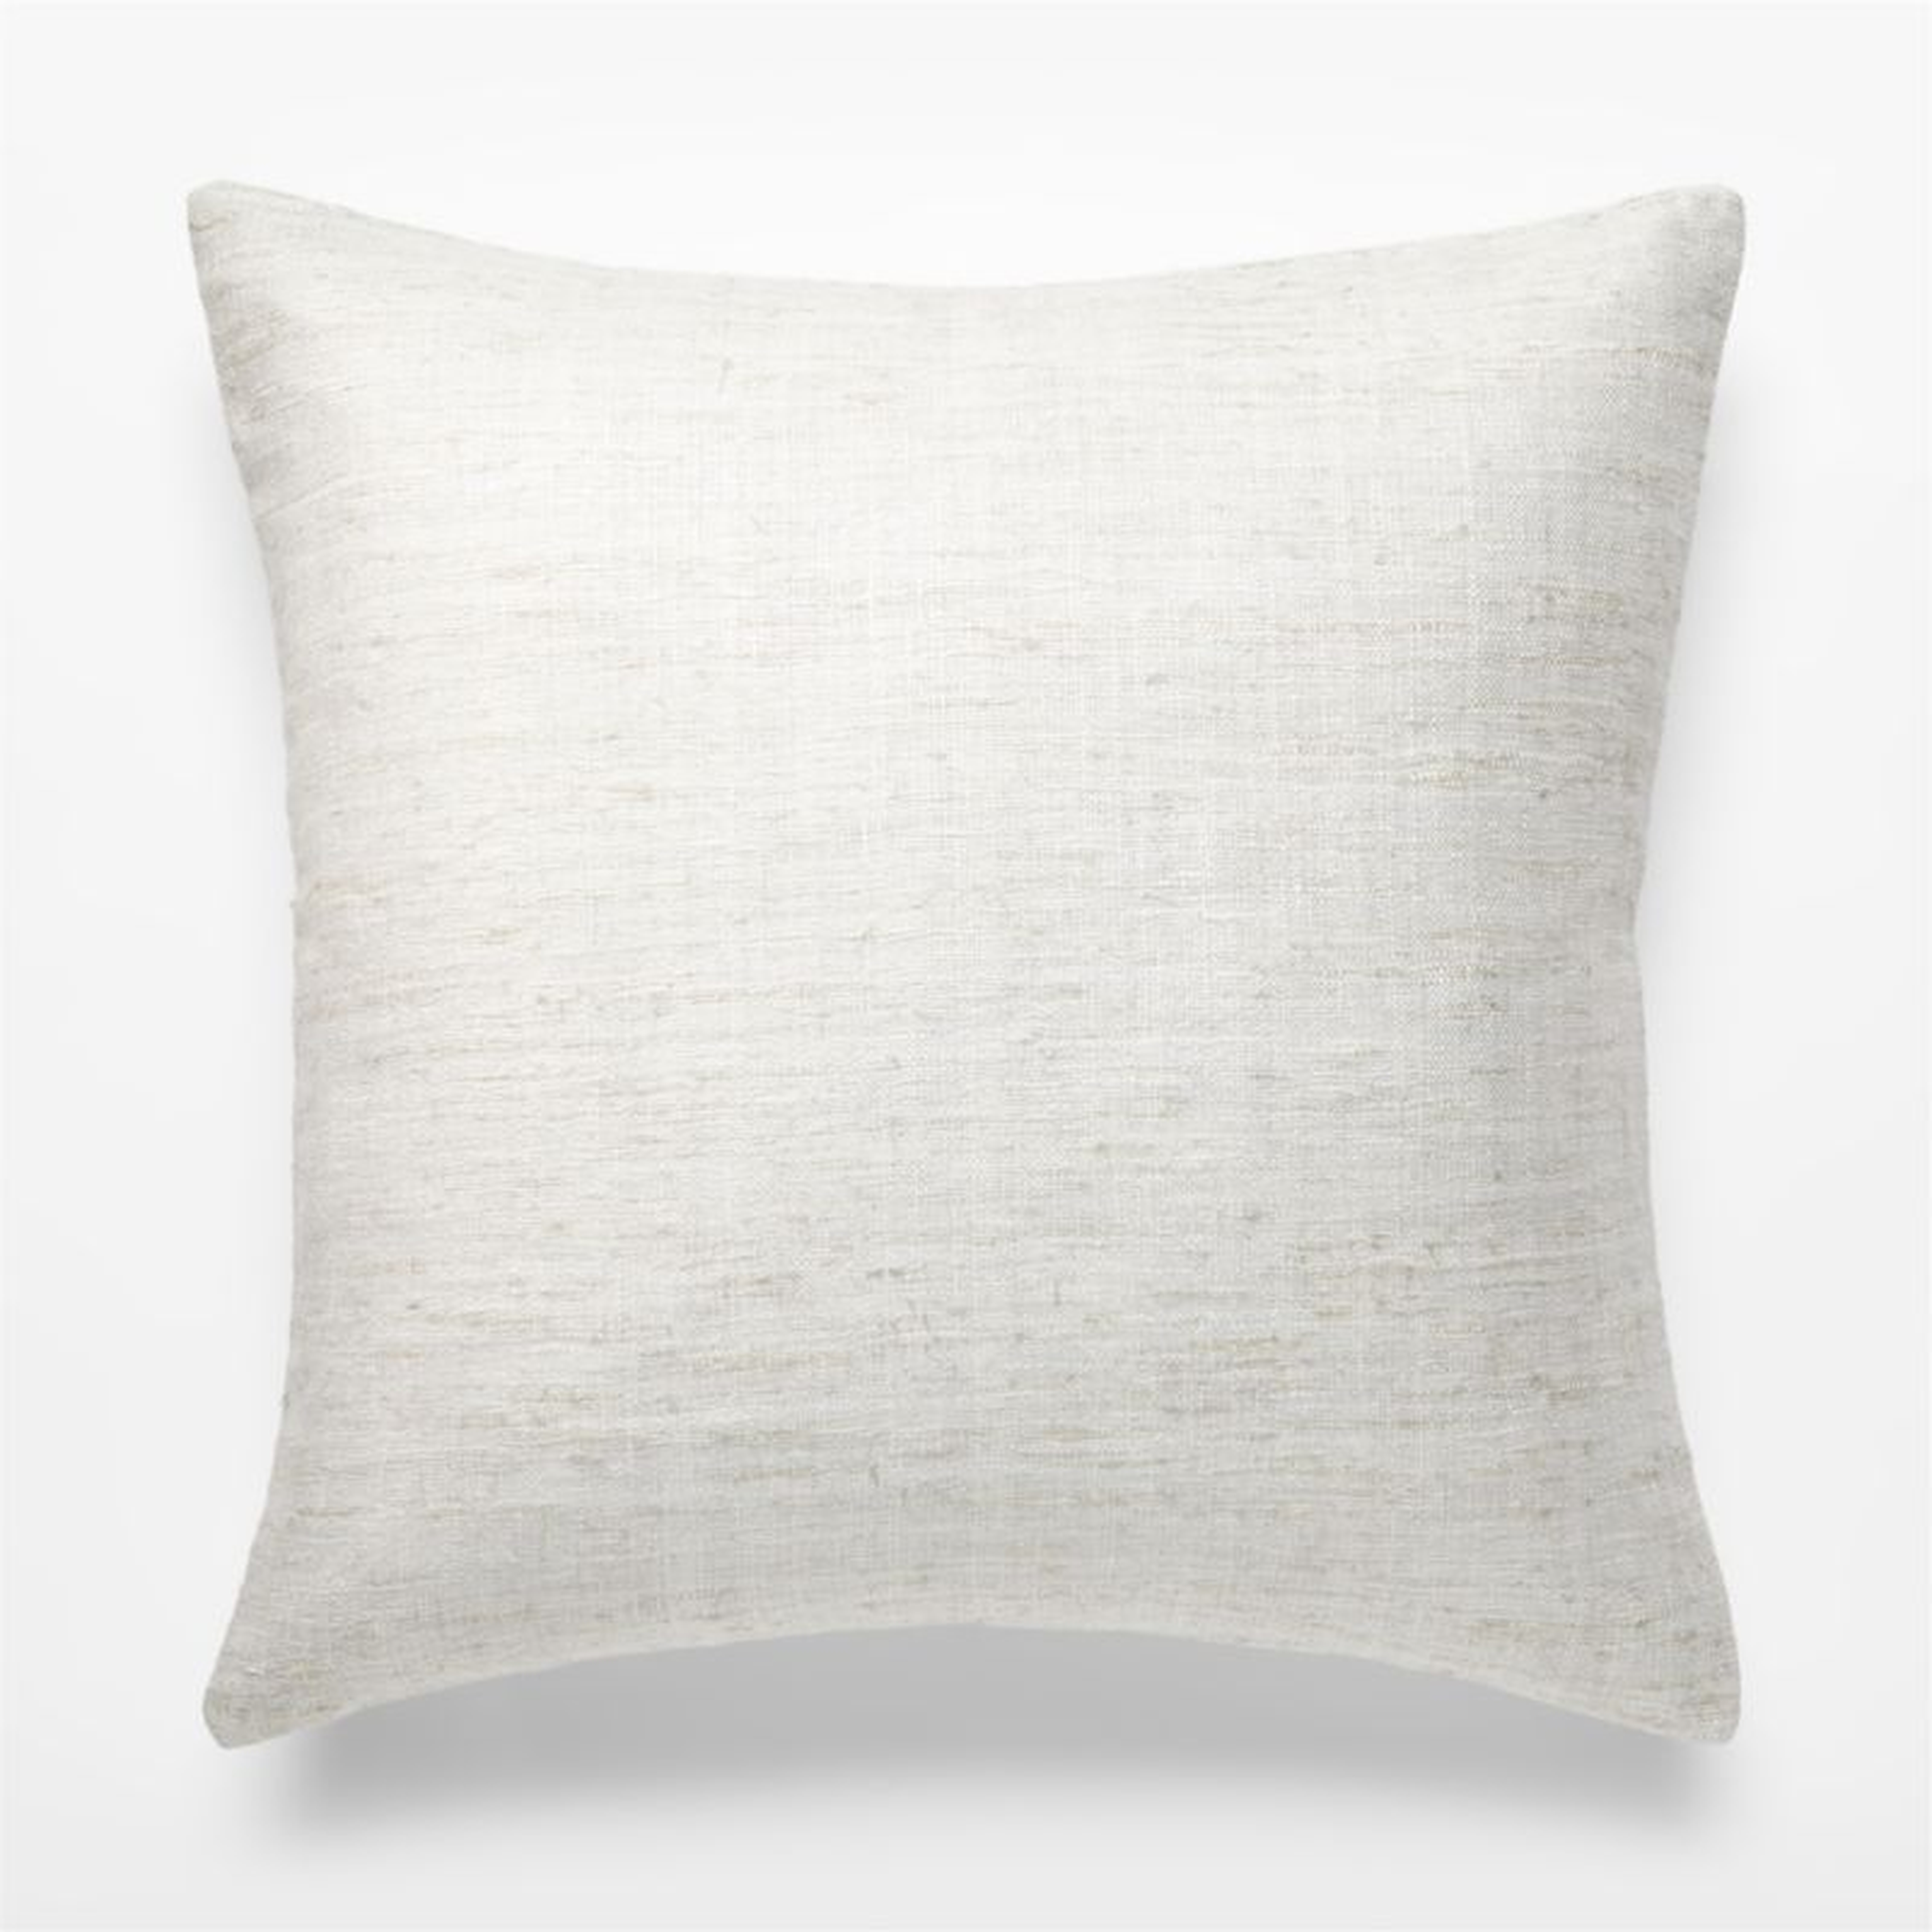 Raj Silk Pillow, Gray, 20" x 20" - CB2